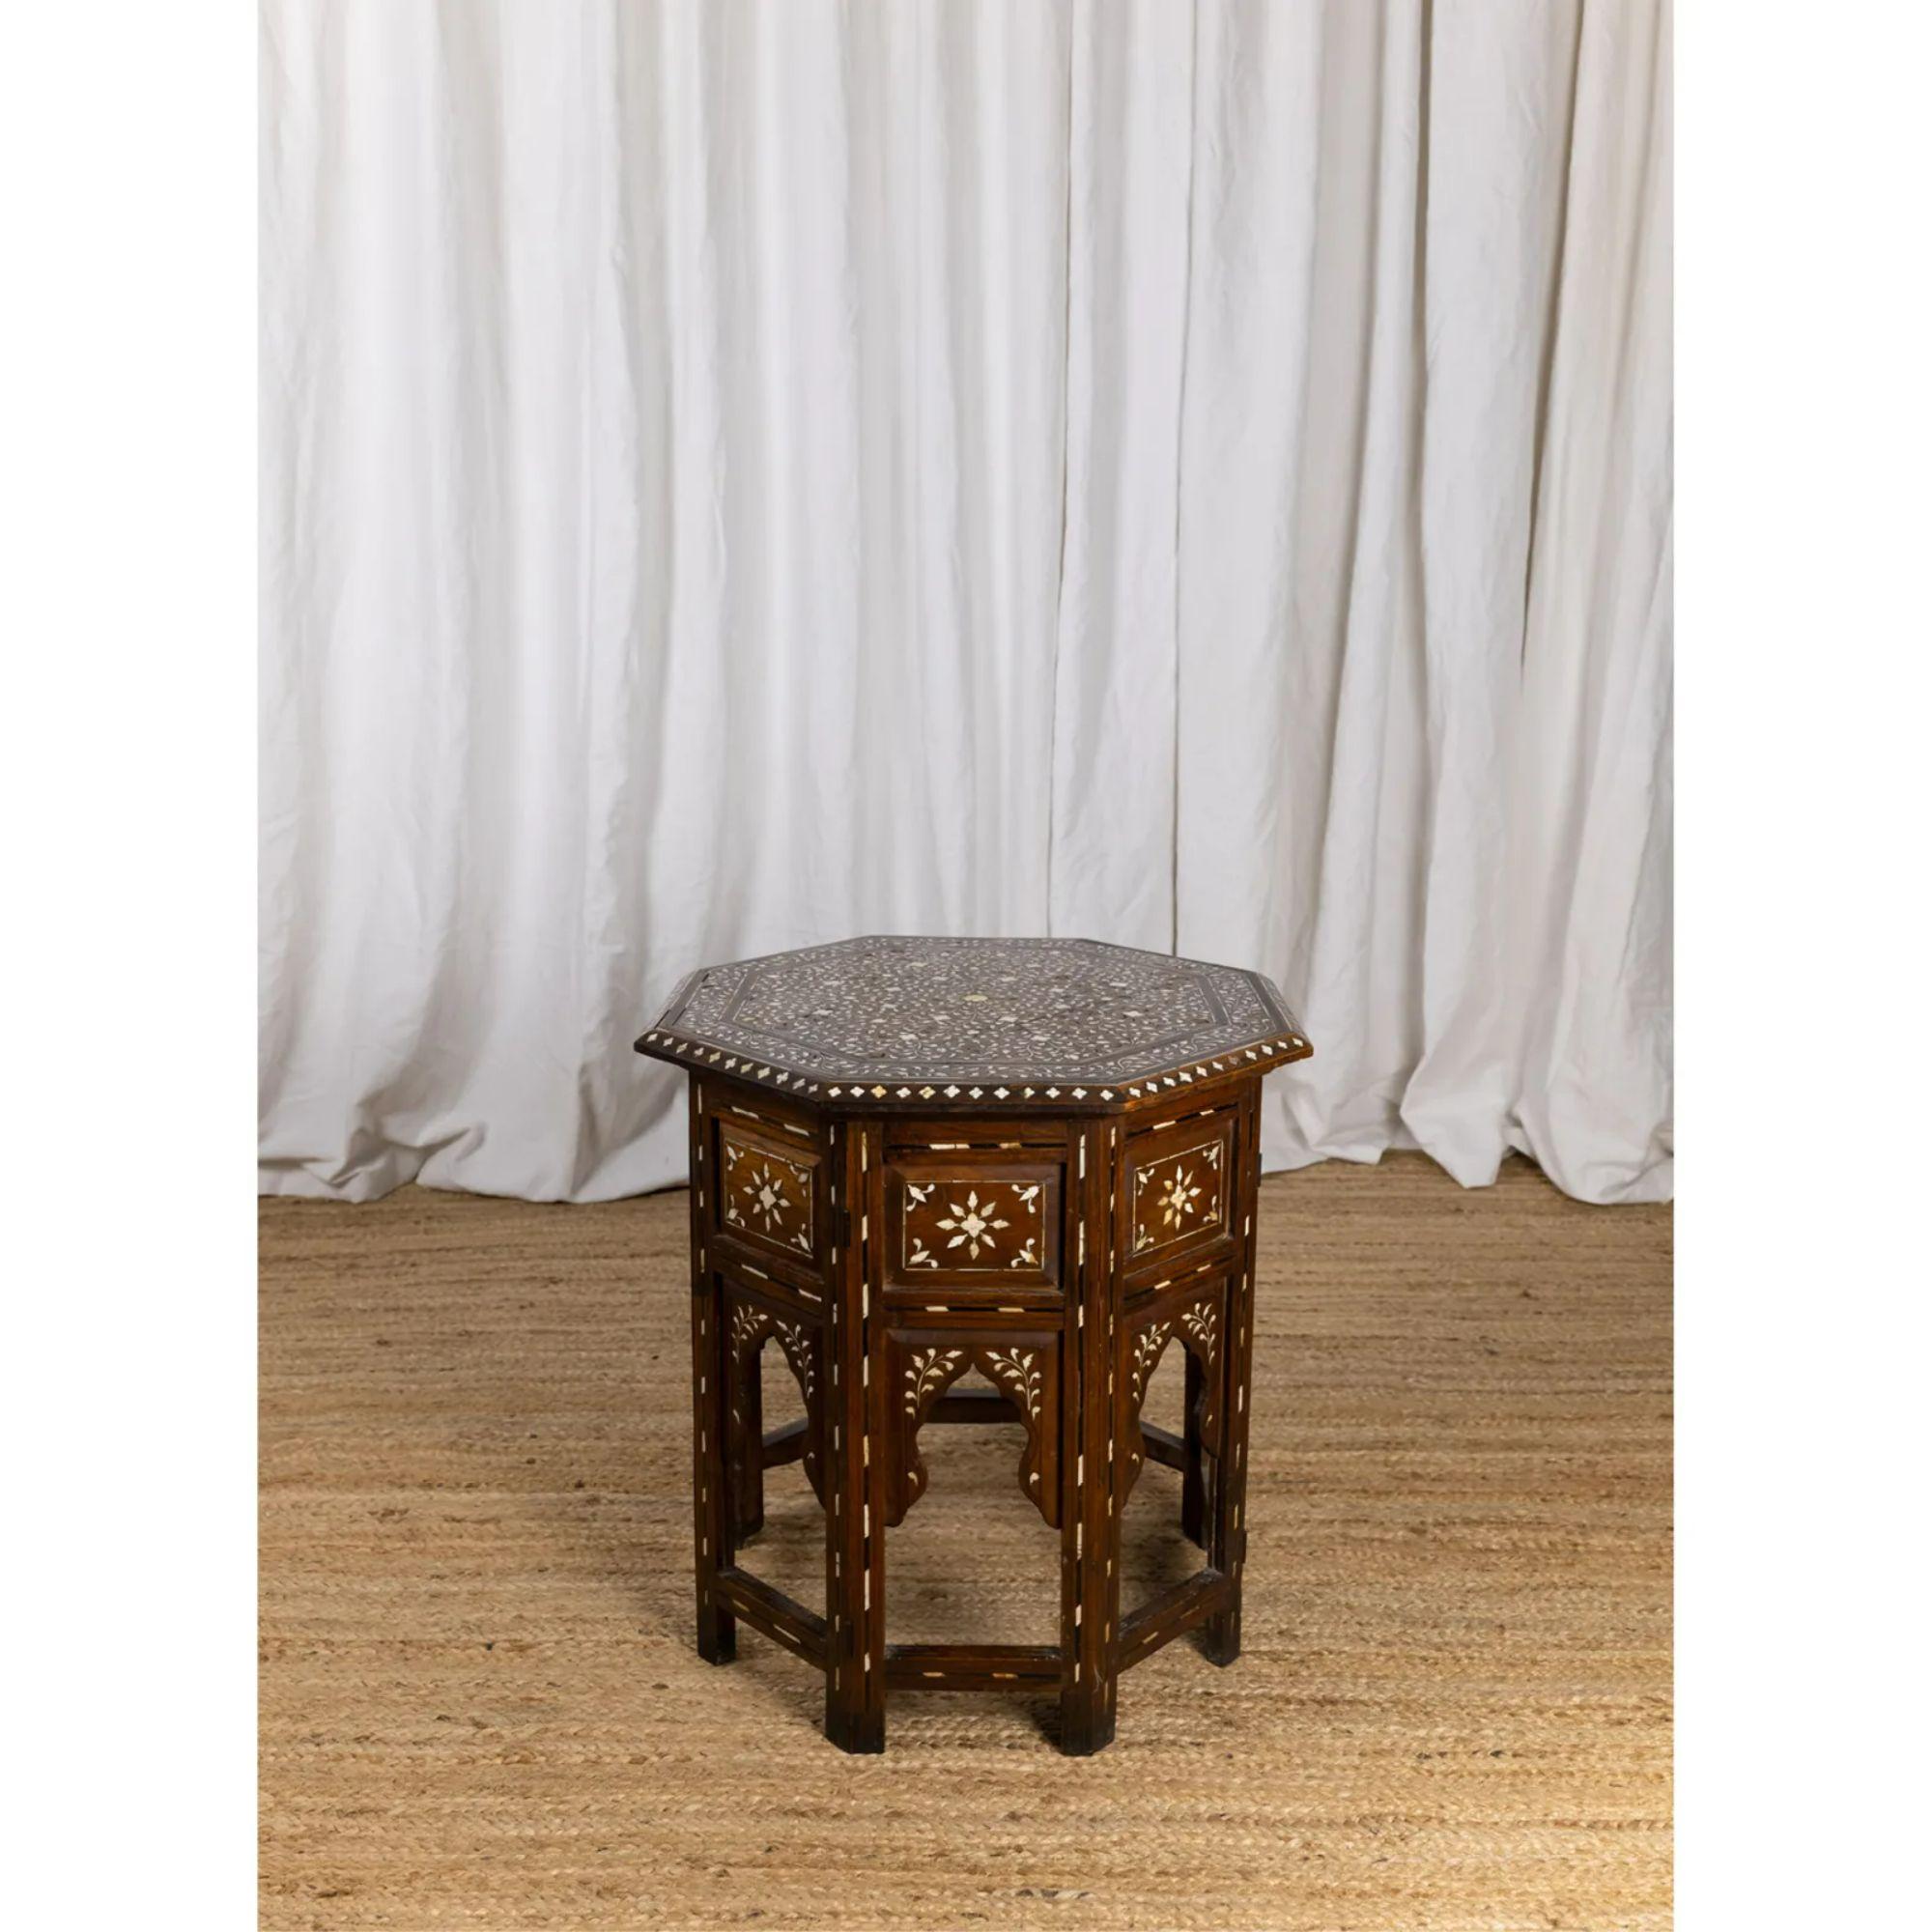 Table octogonale de Hoshiarpur, 19e siècle

Table d'appoint anglo-indienne octogonale du XIXe siècle, incrustée d'os et d'ébène, reposant sur une base Foldes à arcs façonnés.

Pour les expéditions vers les États-Unis, veuillez nous contacter avant